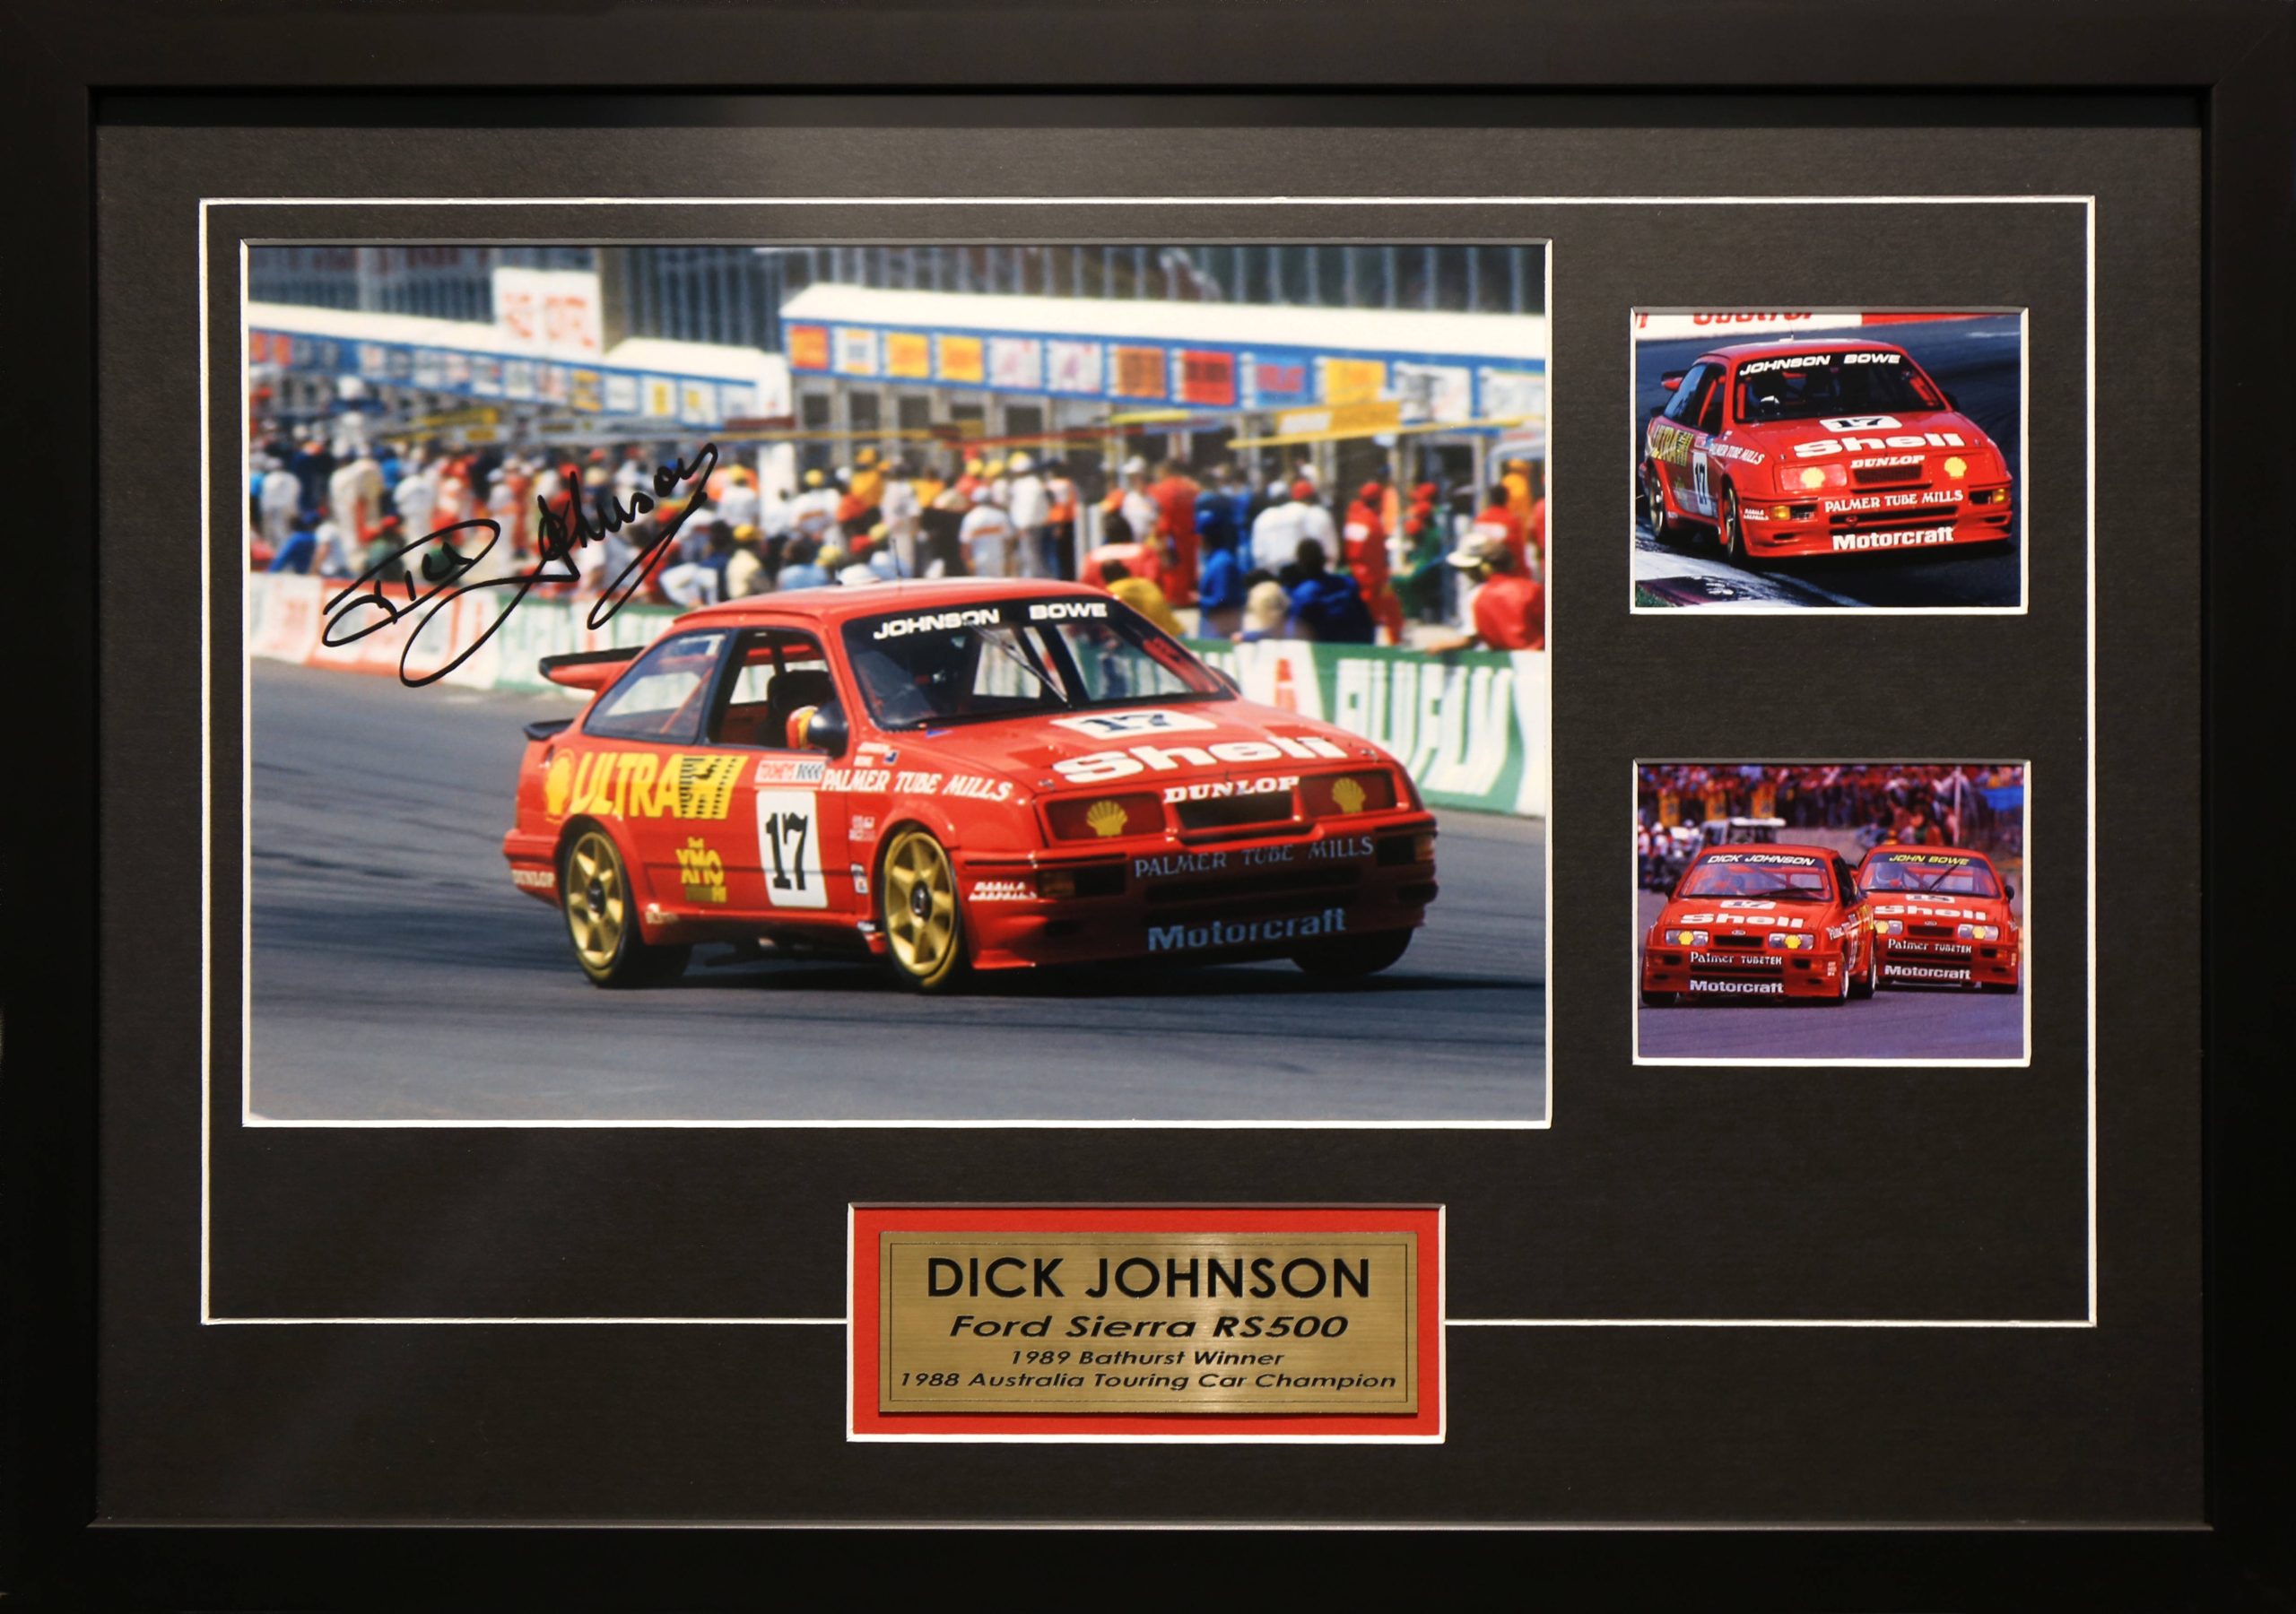 Dick Johnson Signed & Framed Motor Racing Memorabilia. Bathurst 1989 Ford Sierra RS500 Winner.